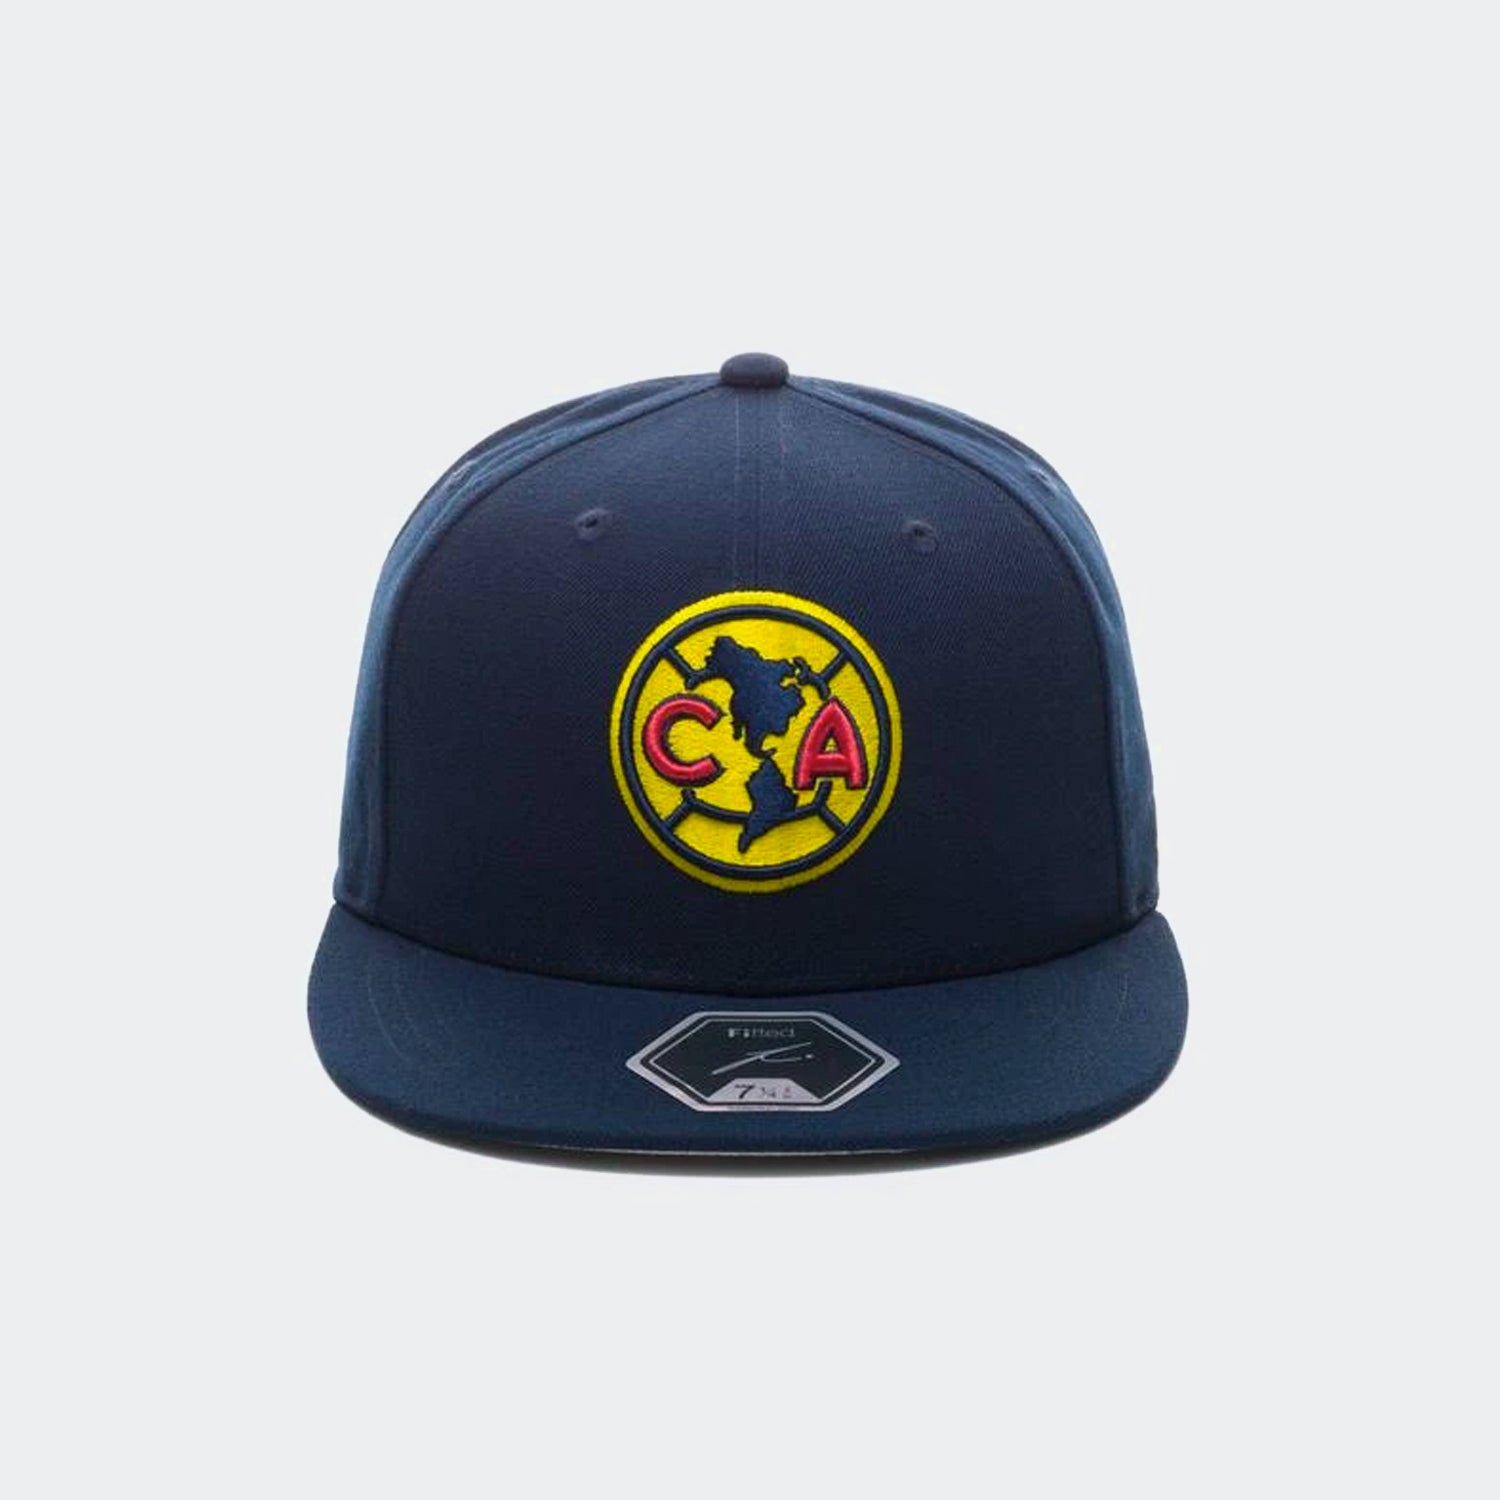 Club America Dawn Fitted Hat